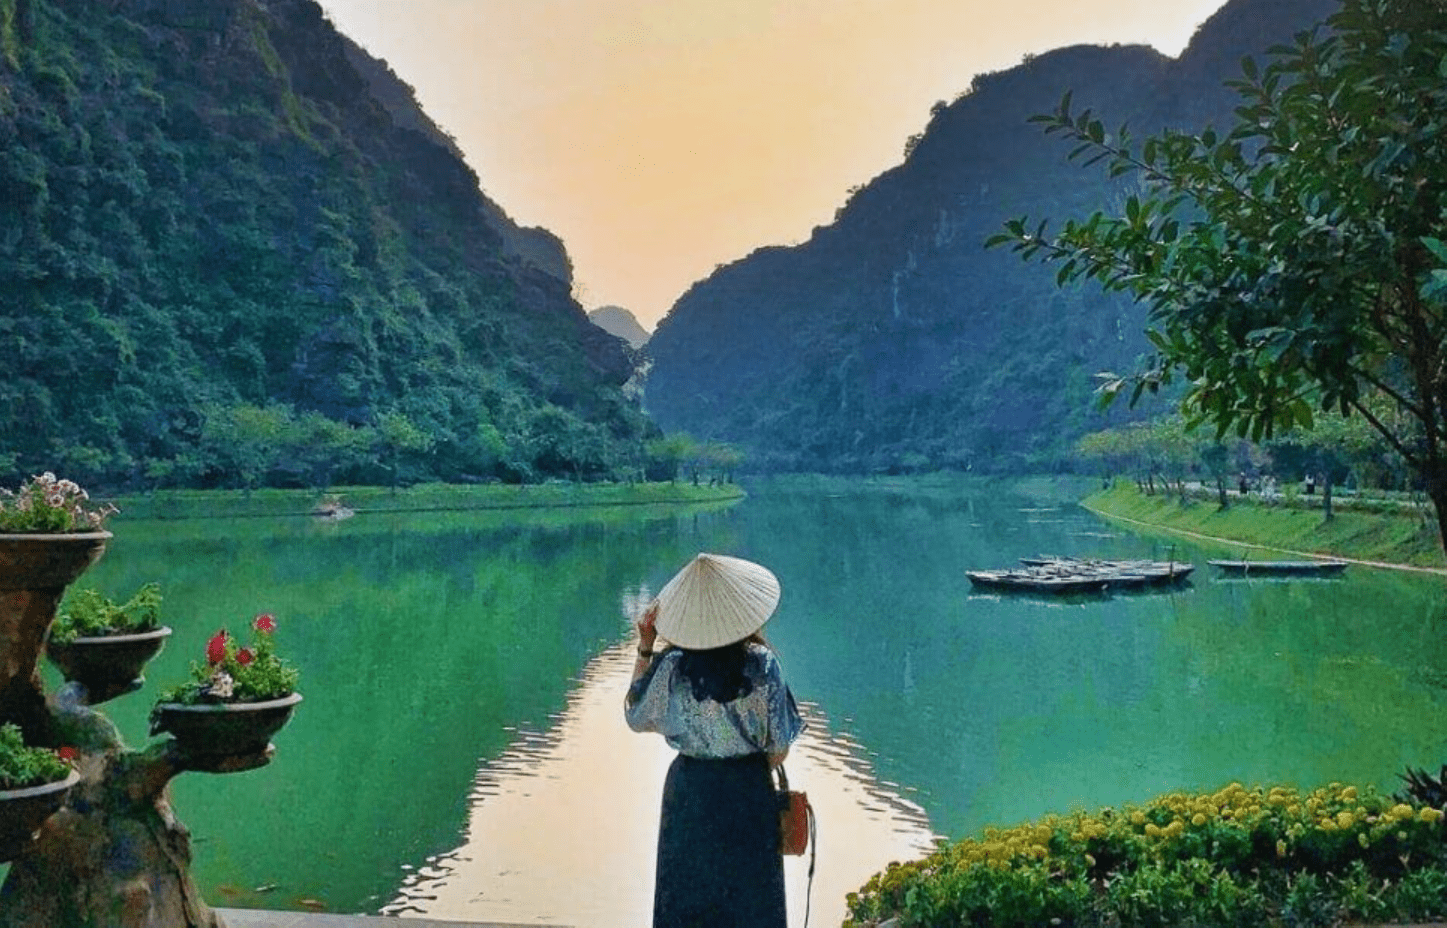 Hồ Ao Giải sẽ cho các bạn trẻ nhiều bức ảnh đẹp với background siêu ảo